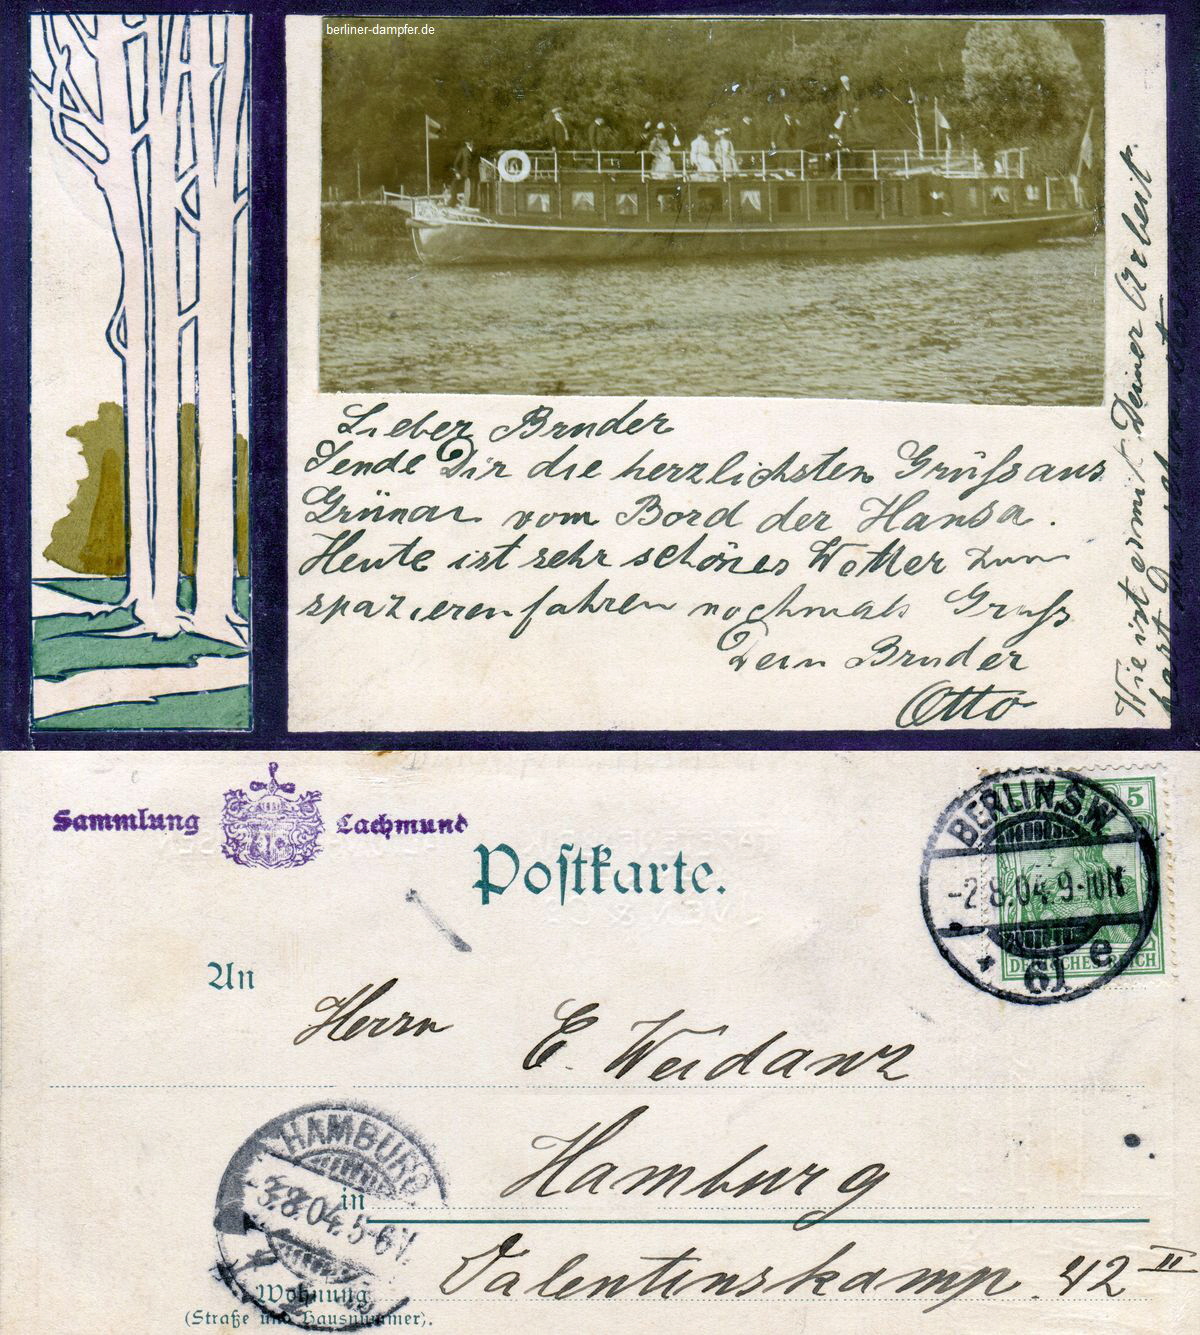 1904-08-02 HANSA in Grünau aus Sammlung Lachmund klein